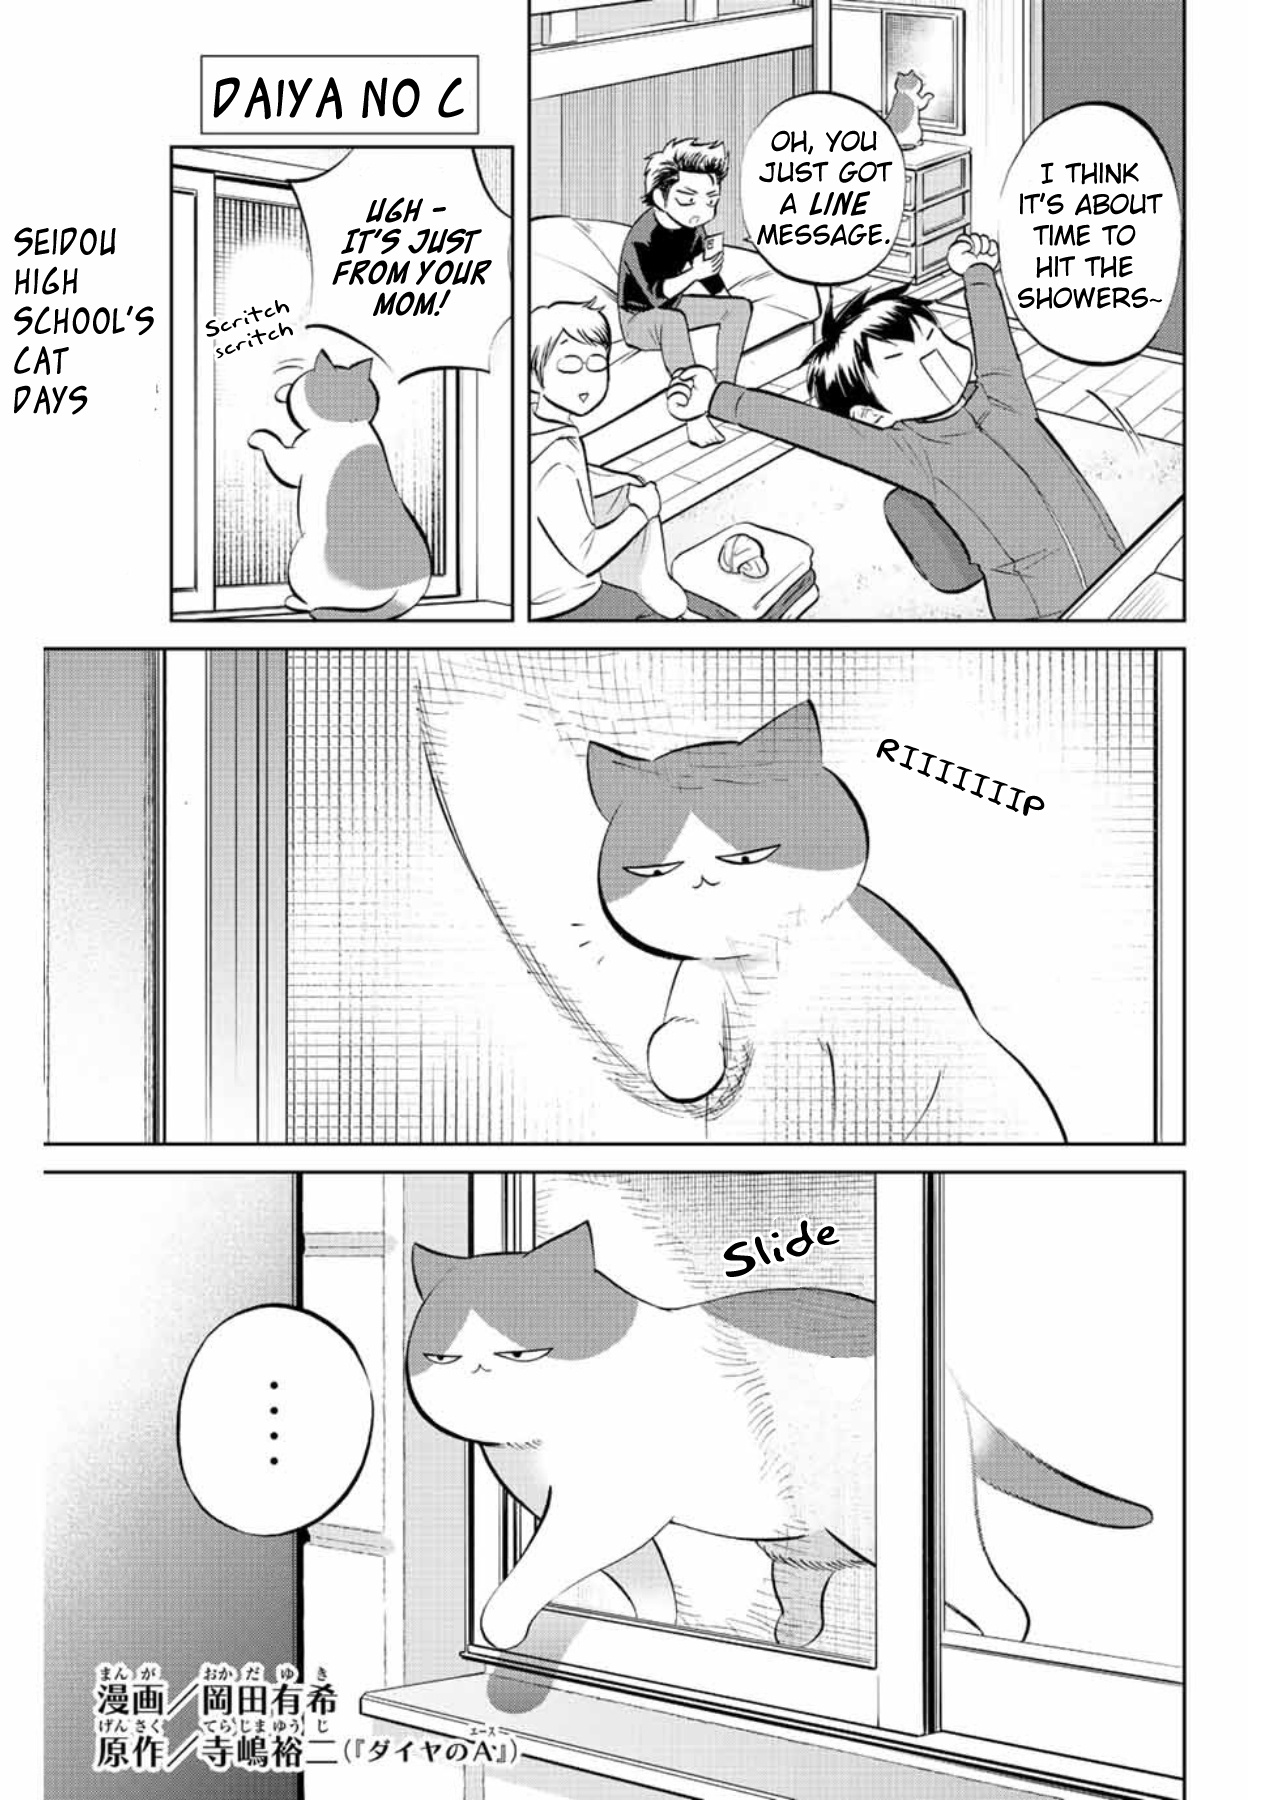 Daiya No C Vol.1 Chapter 3: Miyuki And The Cat - Picture 1